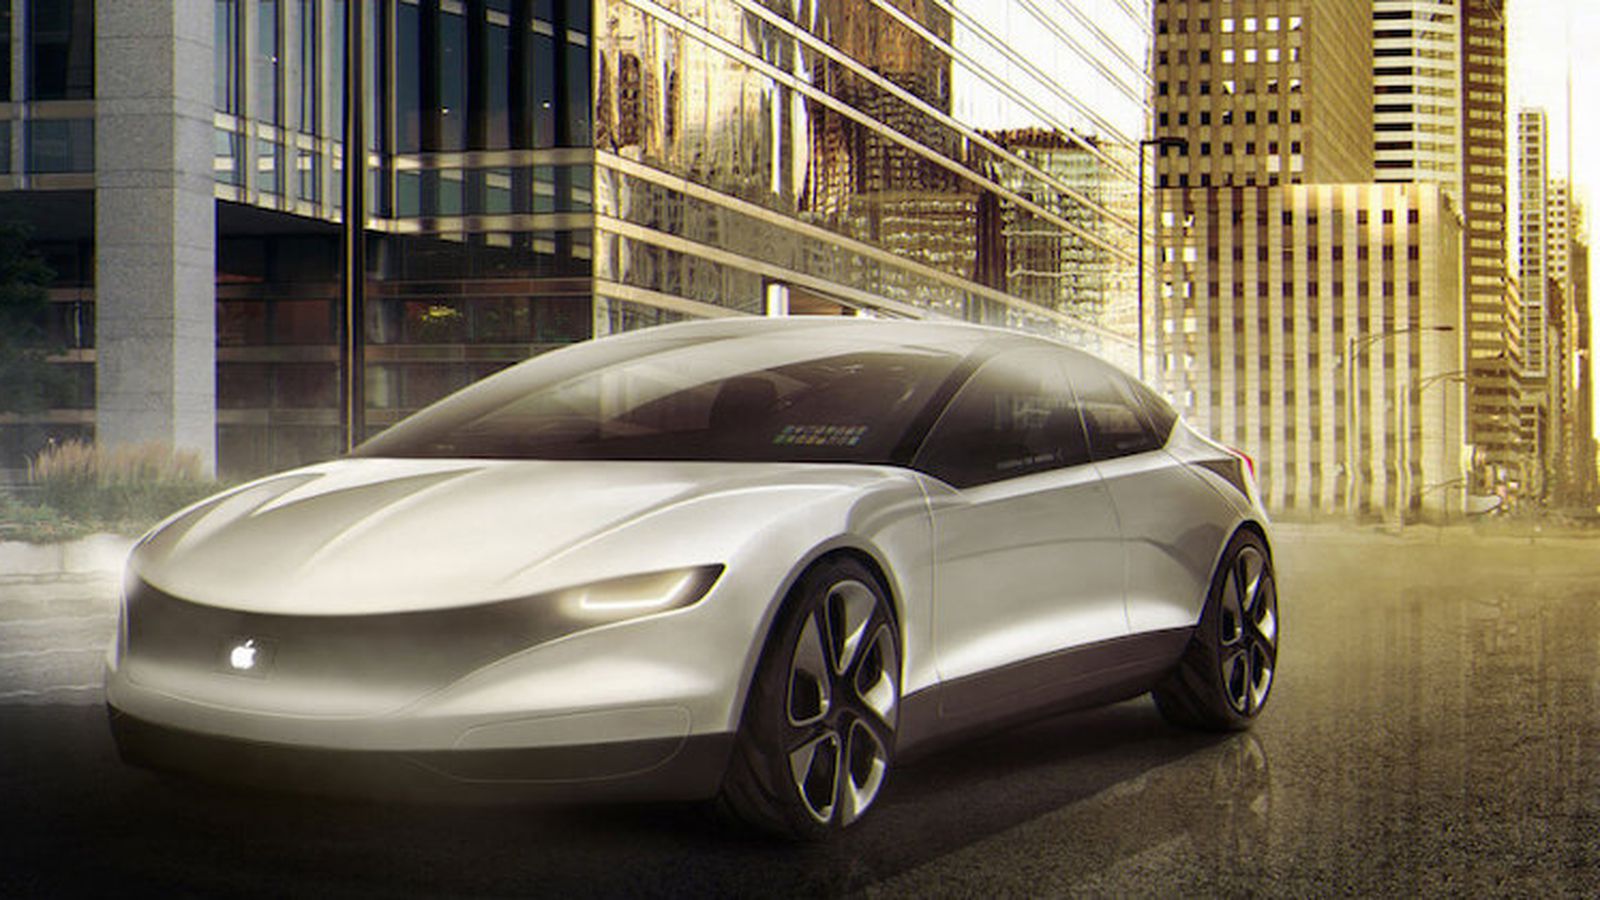 Apple sẽ thông báo đối tác dự án xe điện Apple Car vào năm sau, dự kiến ra mắt năm 2025